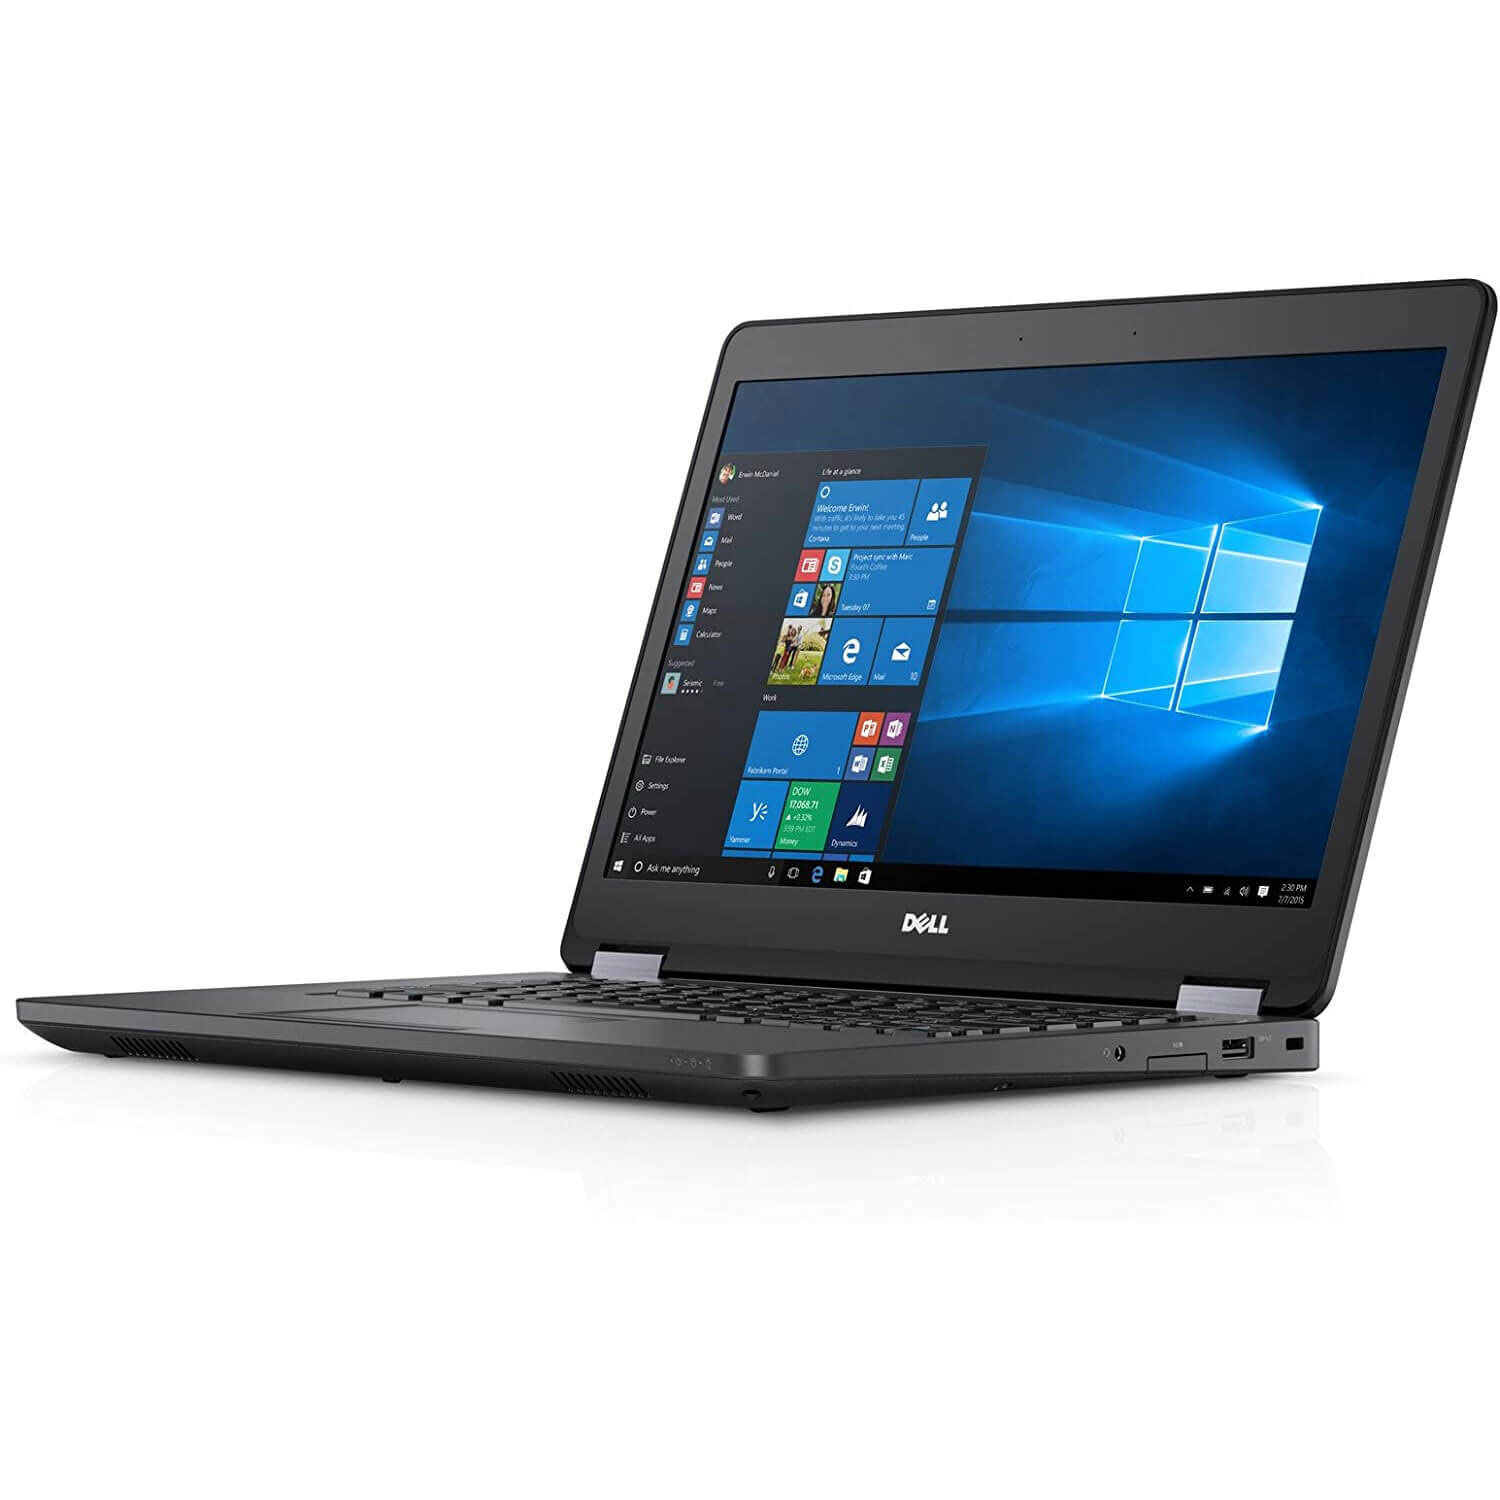 Dell Latitude E5470 Laptop Computer: 14" Display, Intel Core i5 (6th Gen), Windows 10 Pro